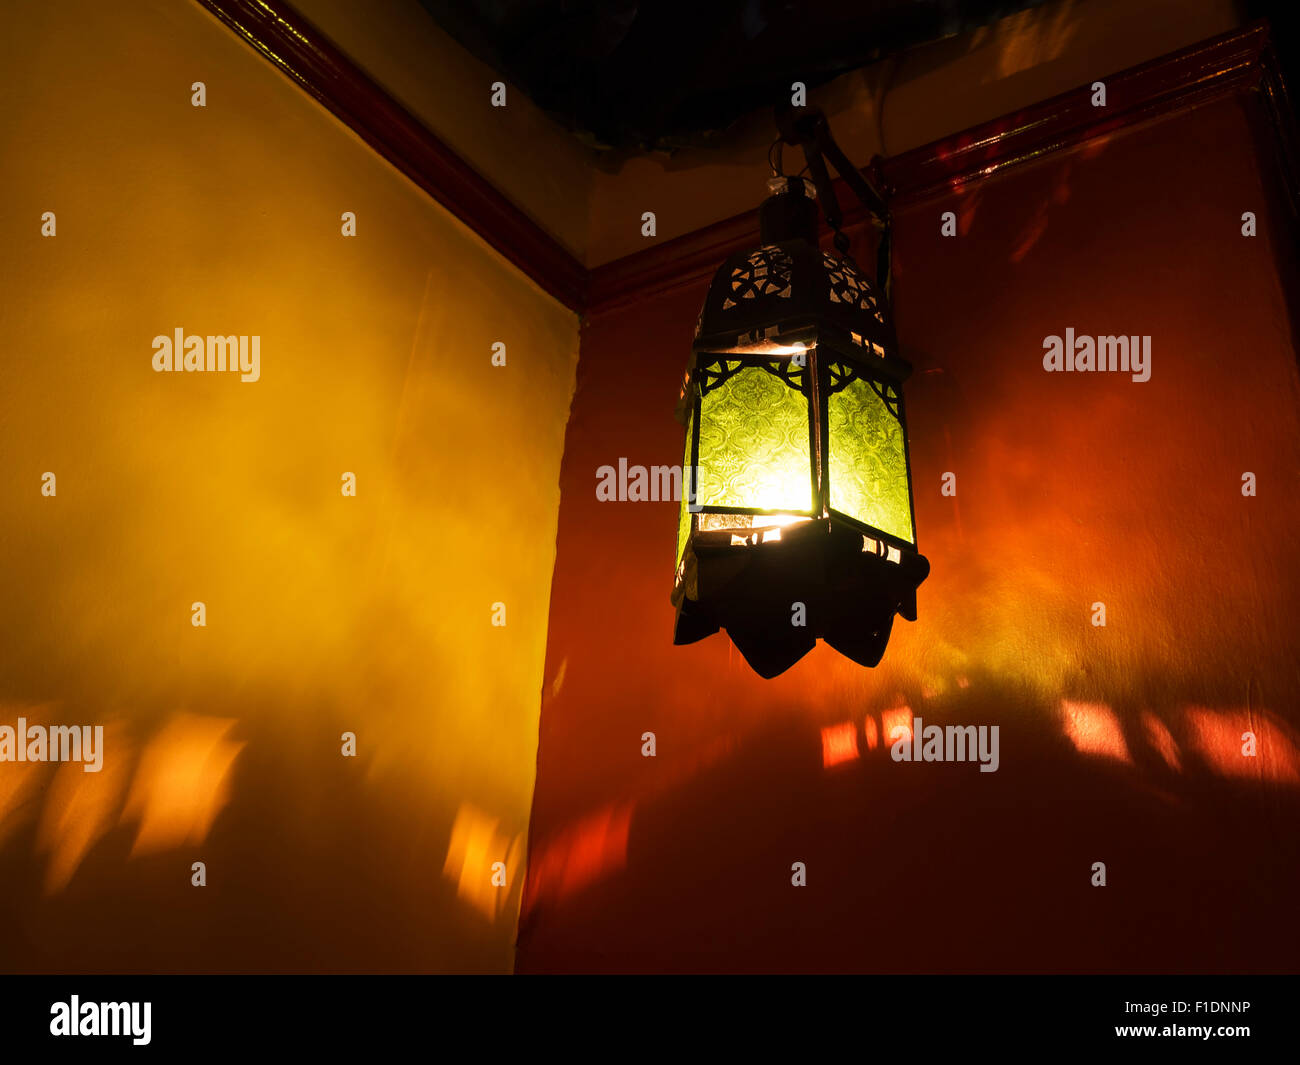 Reich verzierte nordafrikanischen oder nahöstlichen Stil Lampe wirft Schatten auf die Wand. Stockfoto